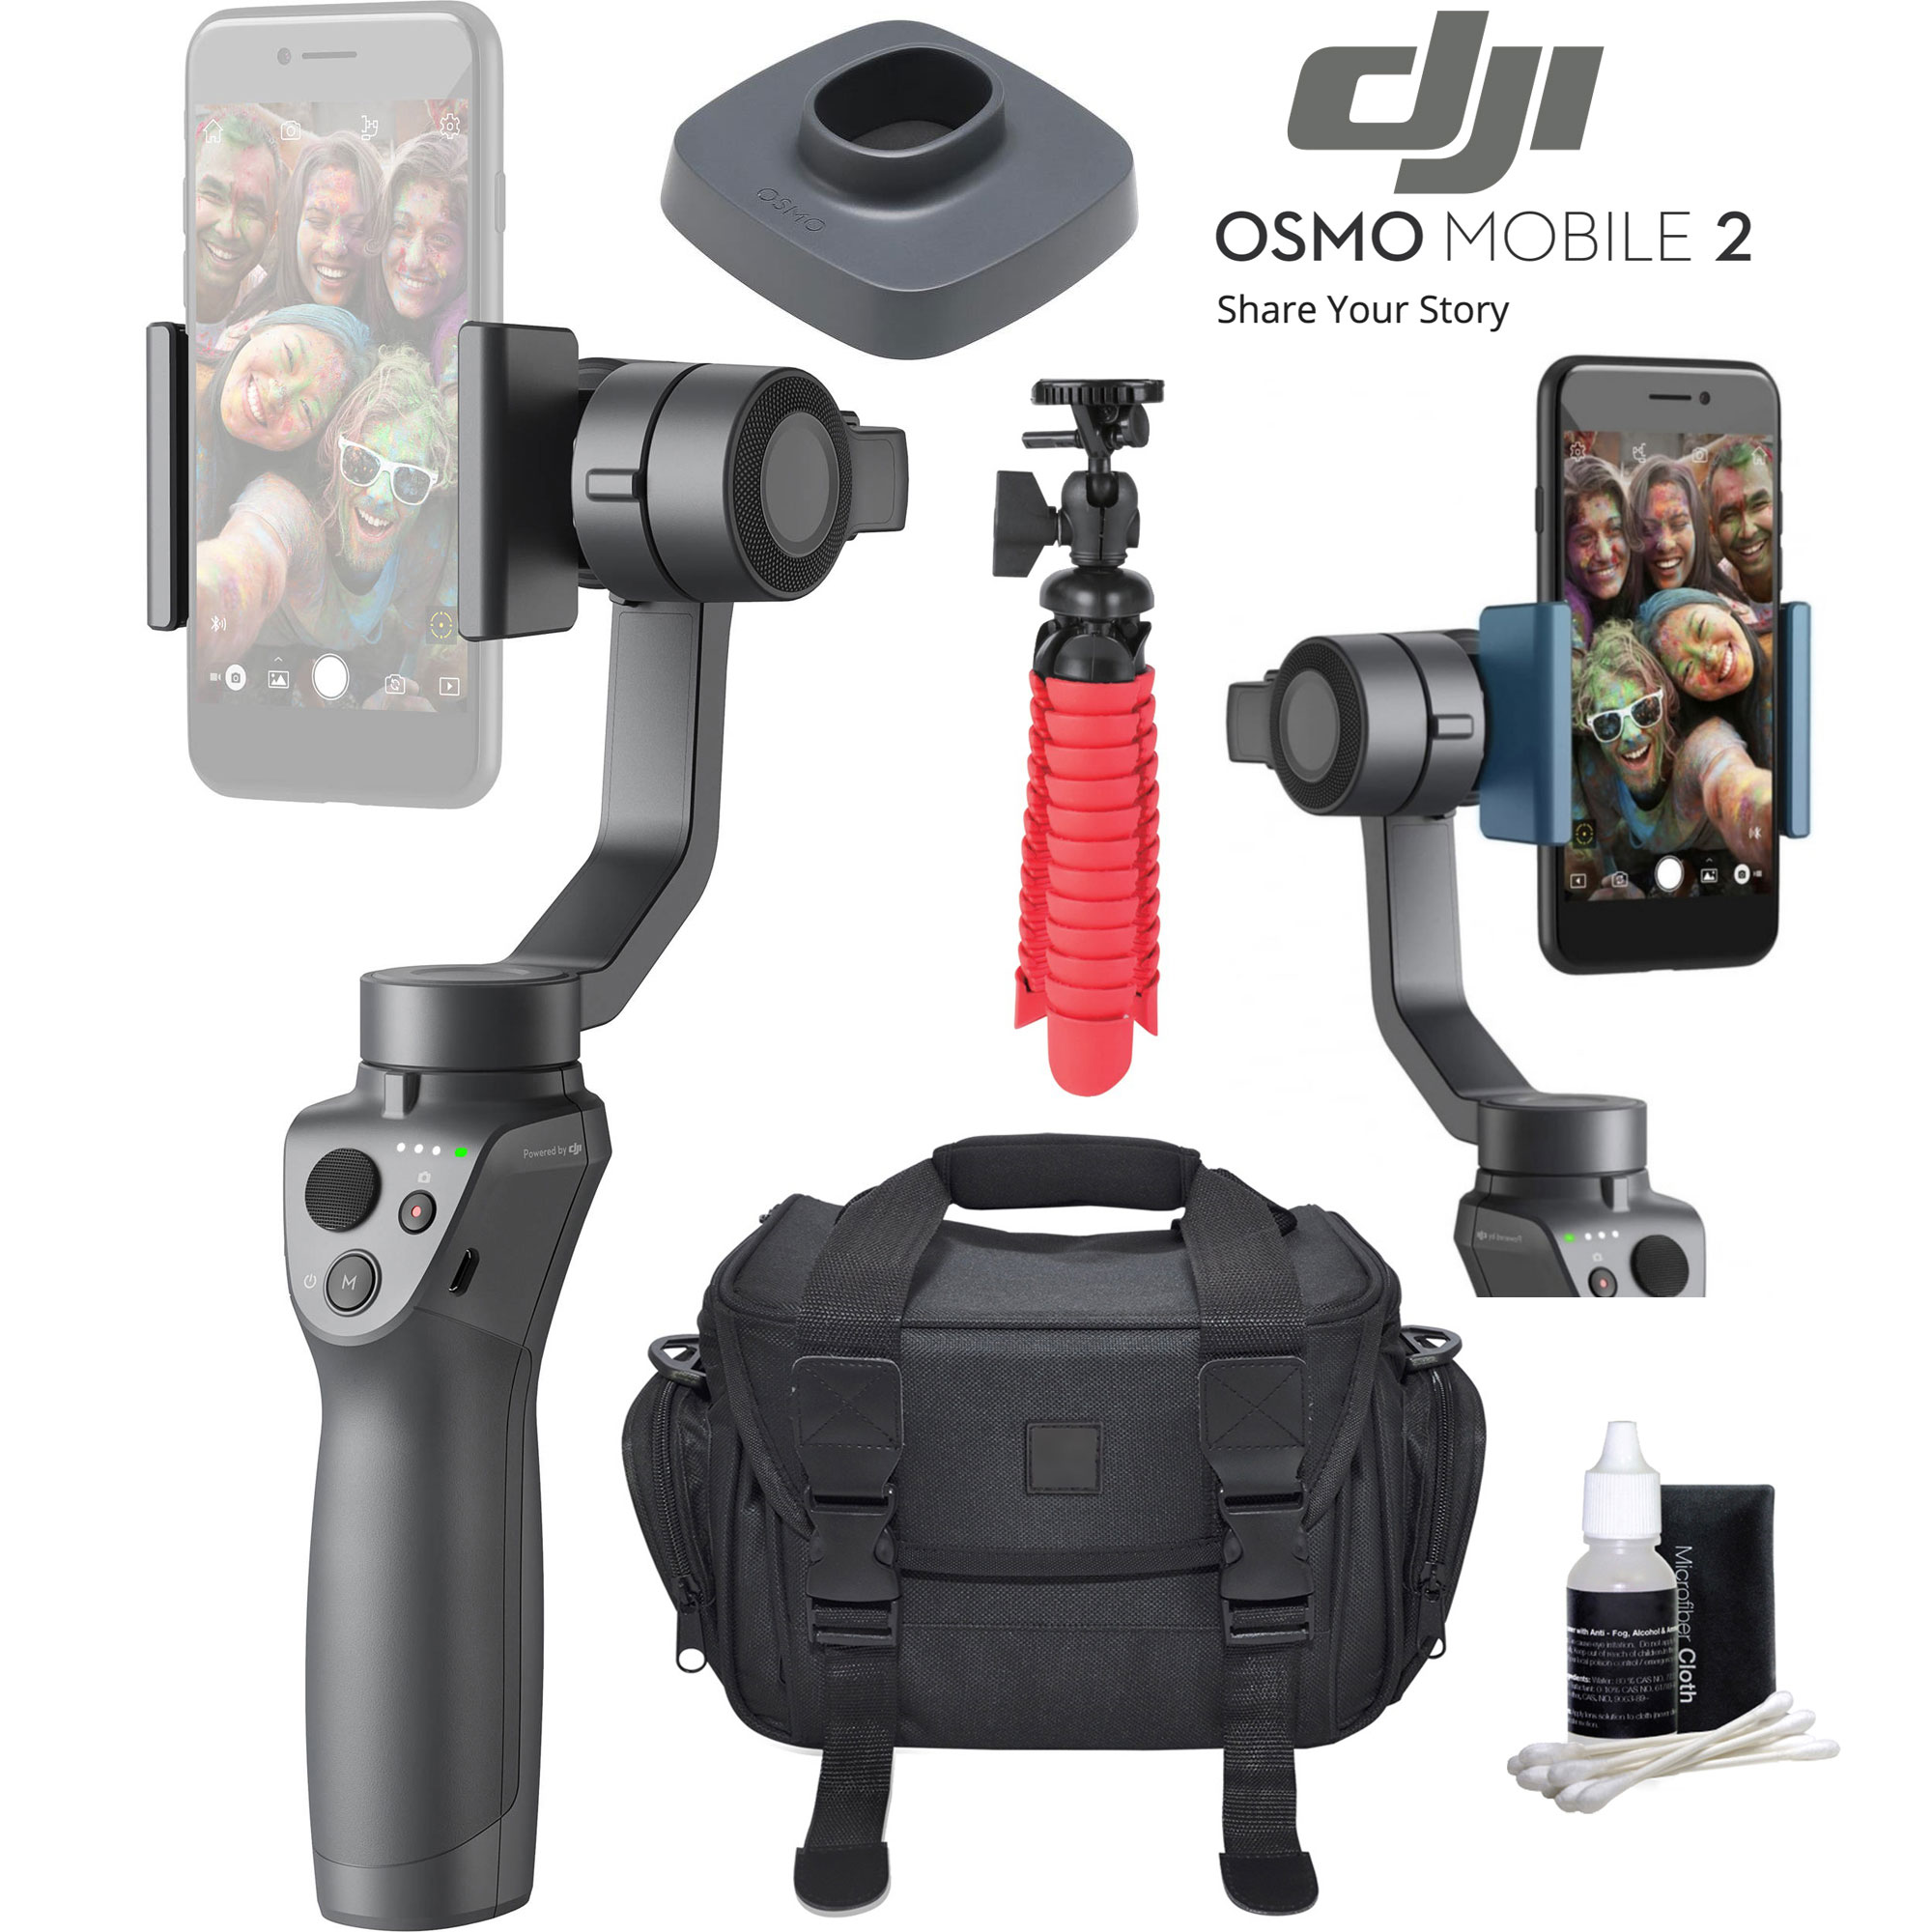 DJI Osmo Mobile 2 Smartphone Gimbal Stabilizer Bundle w /Charge Base and Tripod - E1DJIOSMOMOB2 - DJI Osmo Mobile 2 Smartphone Gimbal Stabilizer Bundle w /Charge Base and Tripod